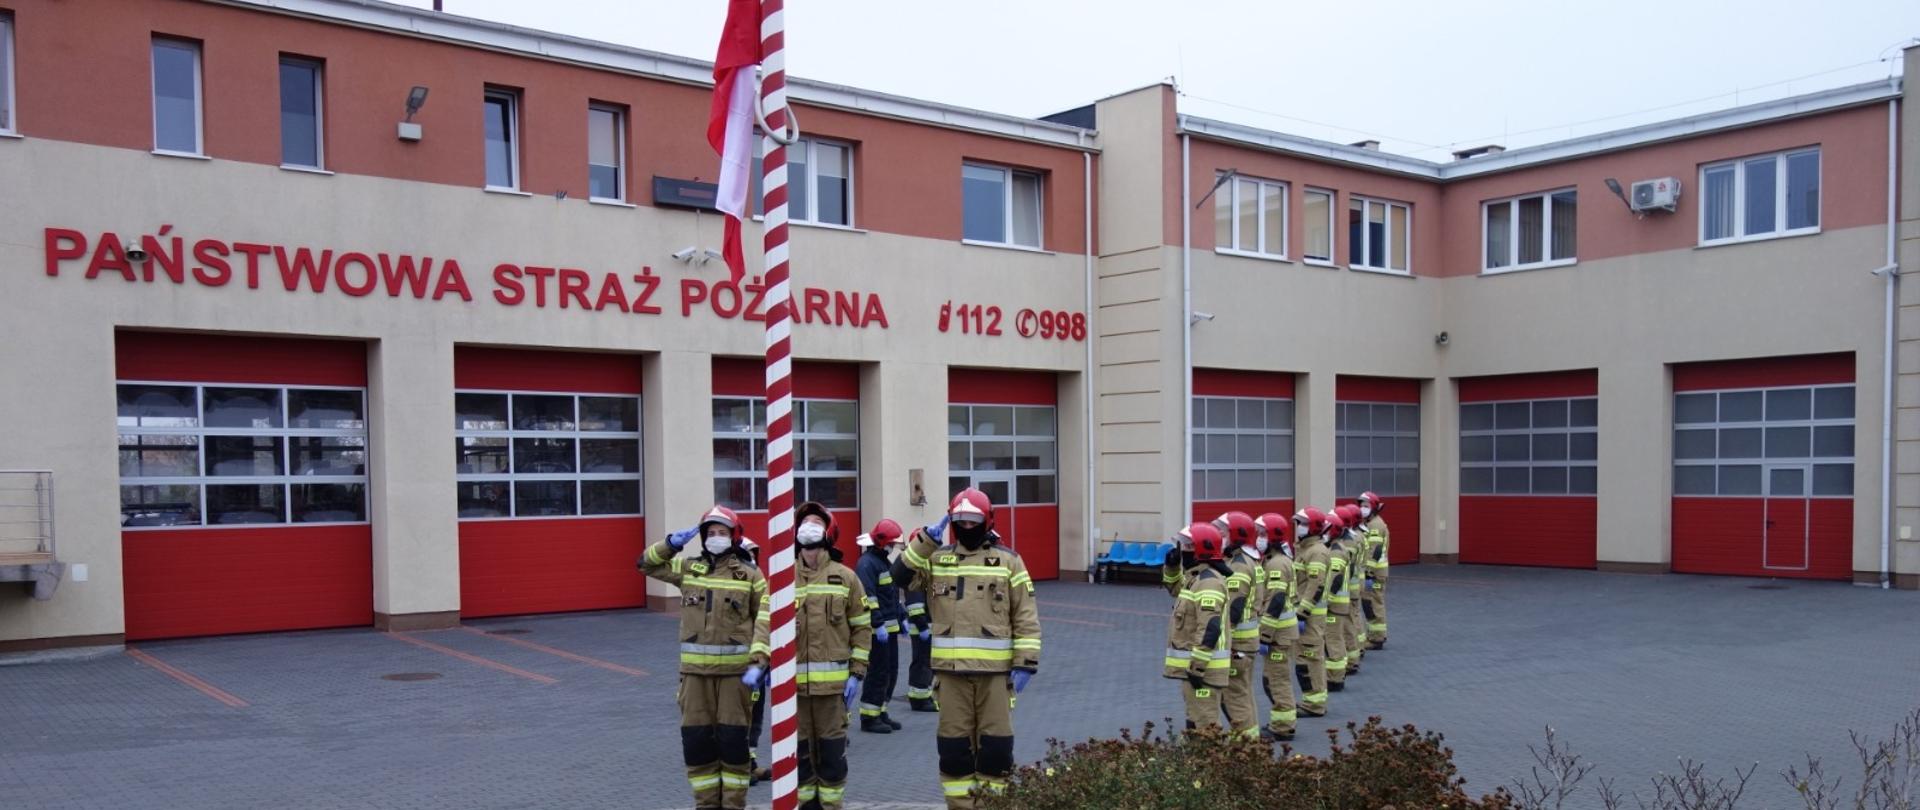 Funkcjonariusze Komendy Powiatowej Państwowej Straży Pożarnej w Pruszczu Gdańskim na placu przed budynkiem Komendy są w trakcie uroczystego podniesienia flagi narodowej na maszt.